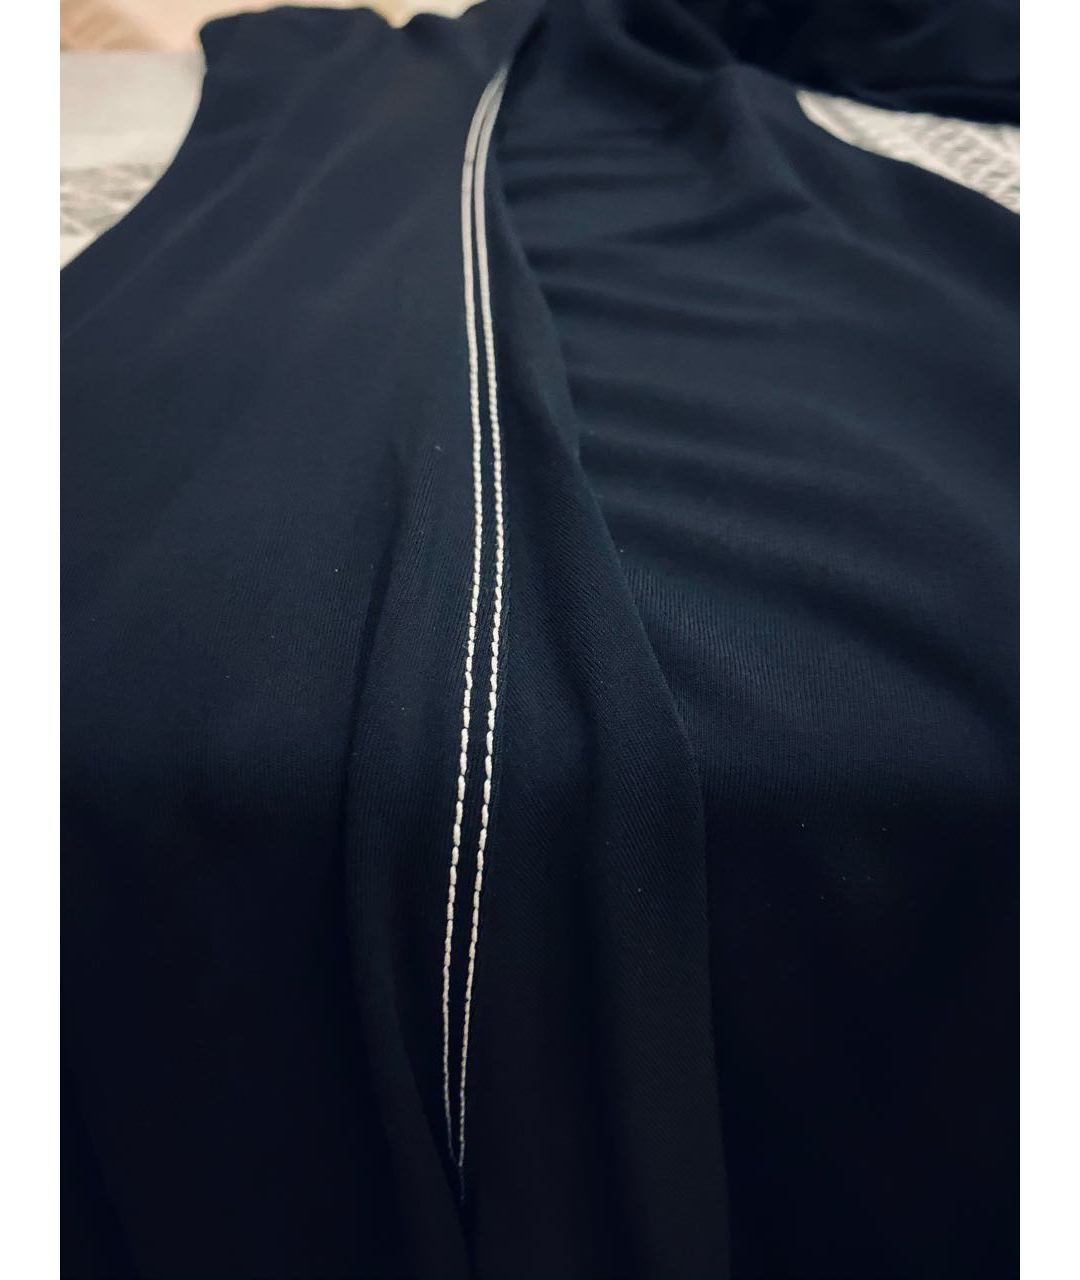 LOUIS VUITTON PRE-OWNED Черное полиэстеровое повседневное платье, фото 5